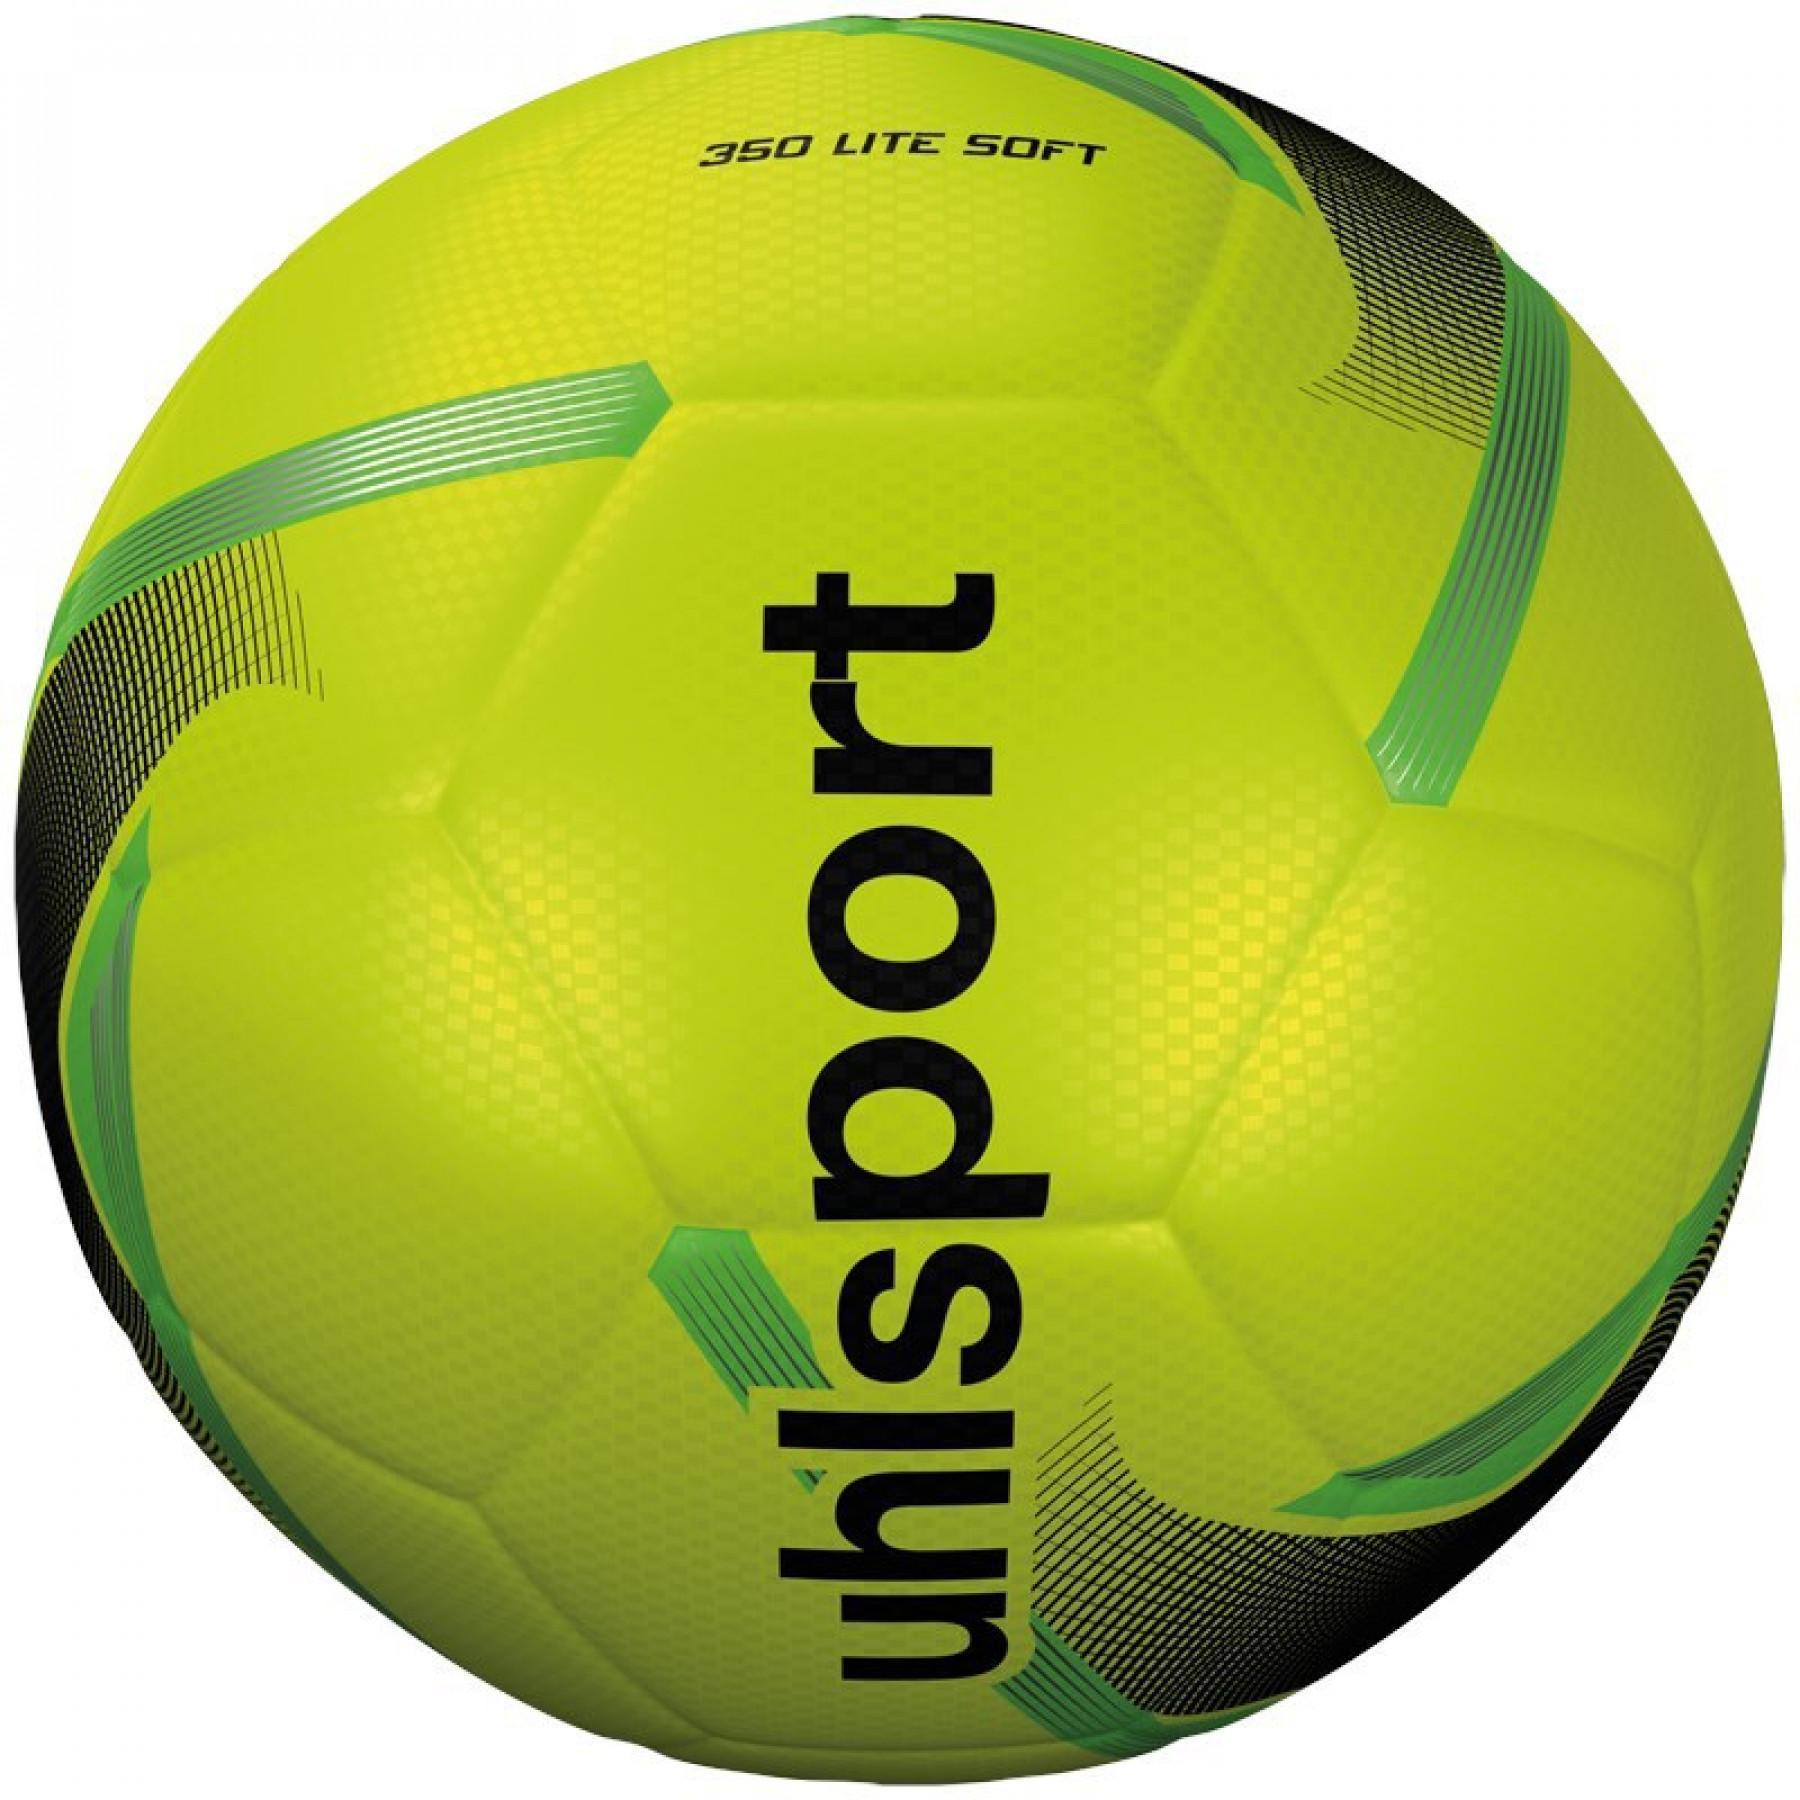 Ballon enfant Uhlsport 350 Lite Soft